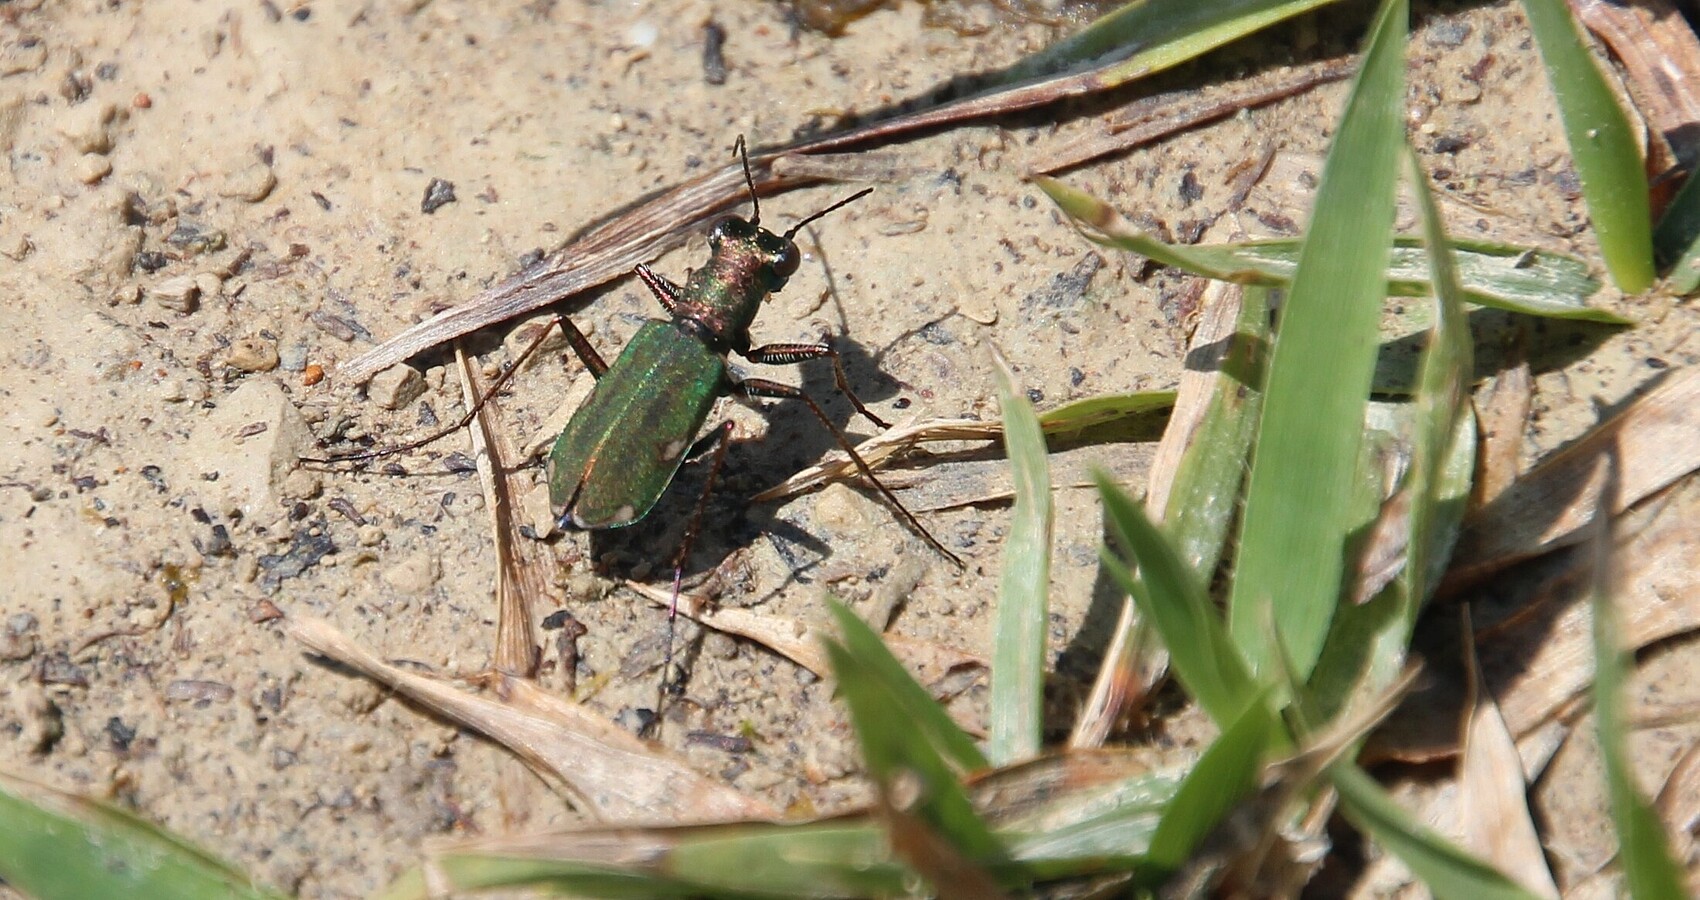 Ein grüner Käfer grabbelt auf dem Boden zwischen Gräsern